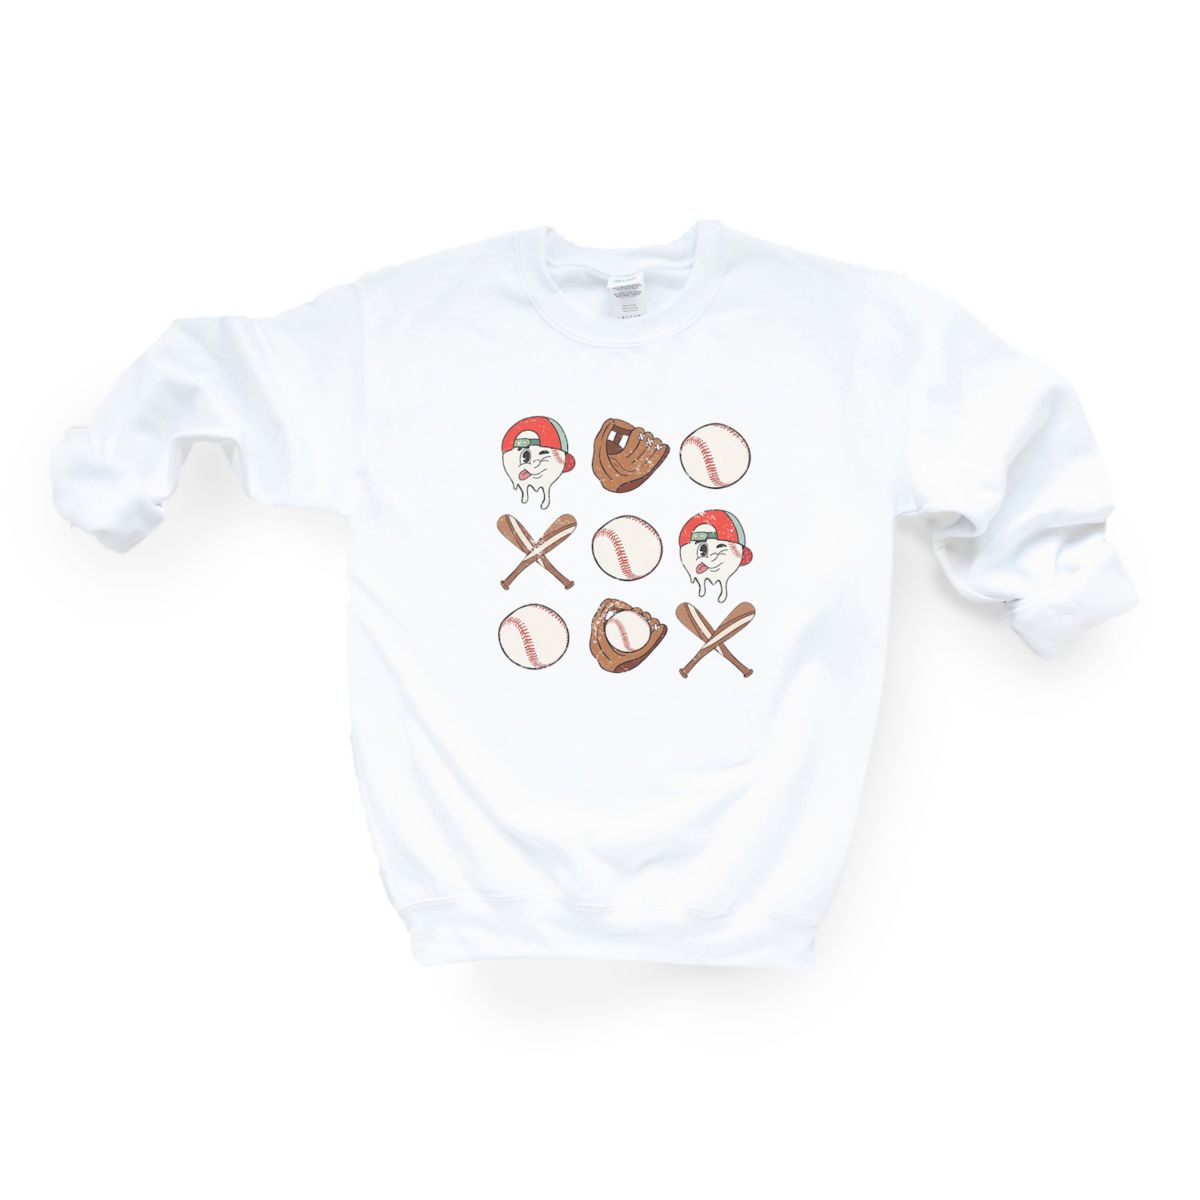 Baseball Collage Sweatshirt Simply Sage Market